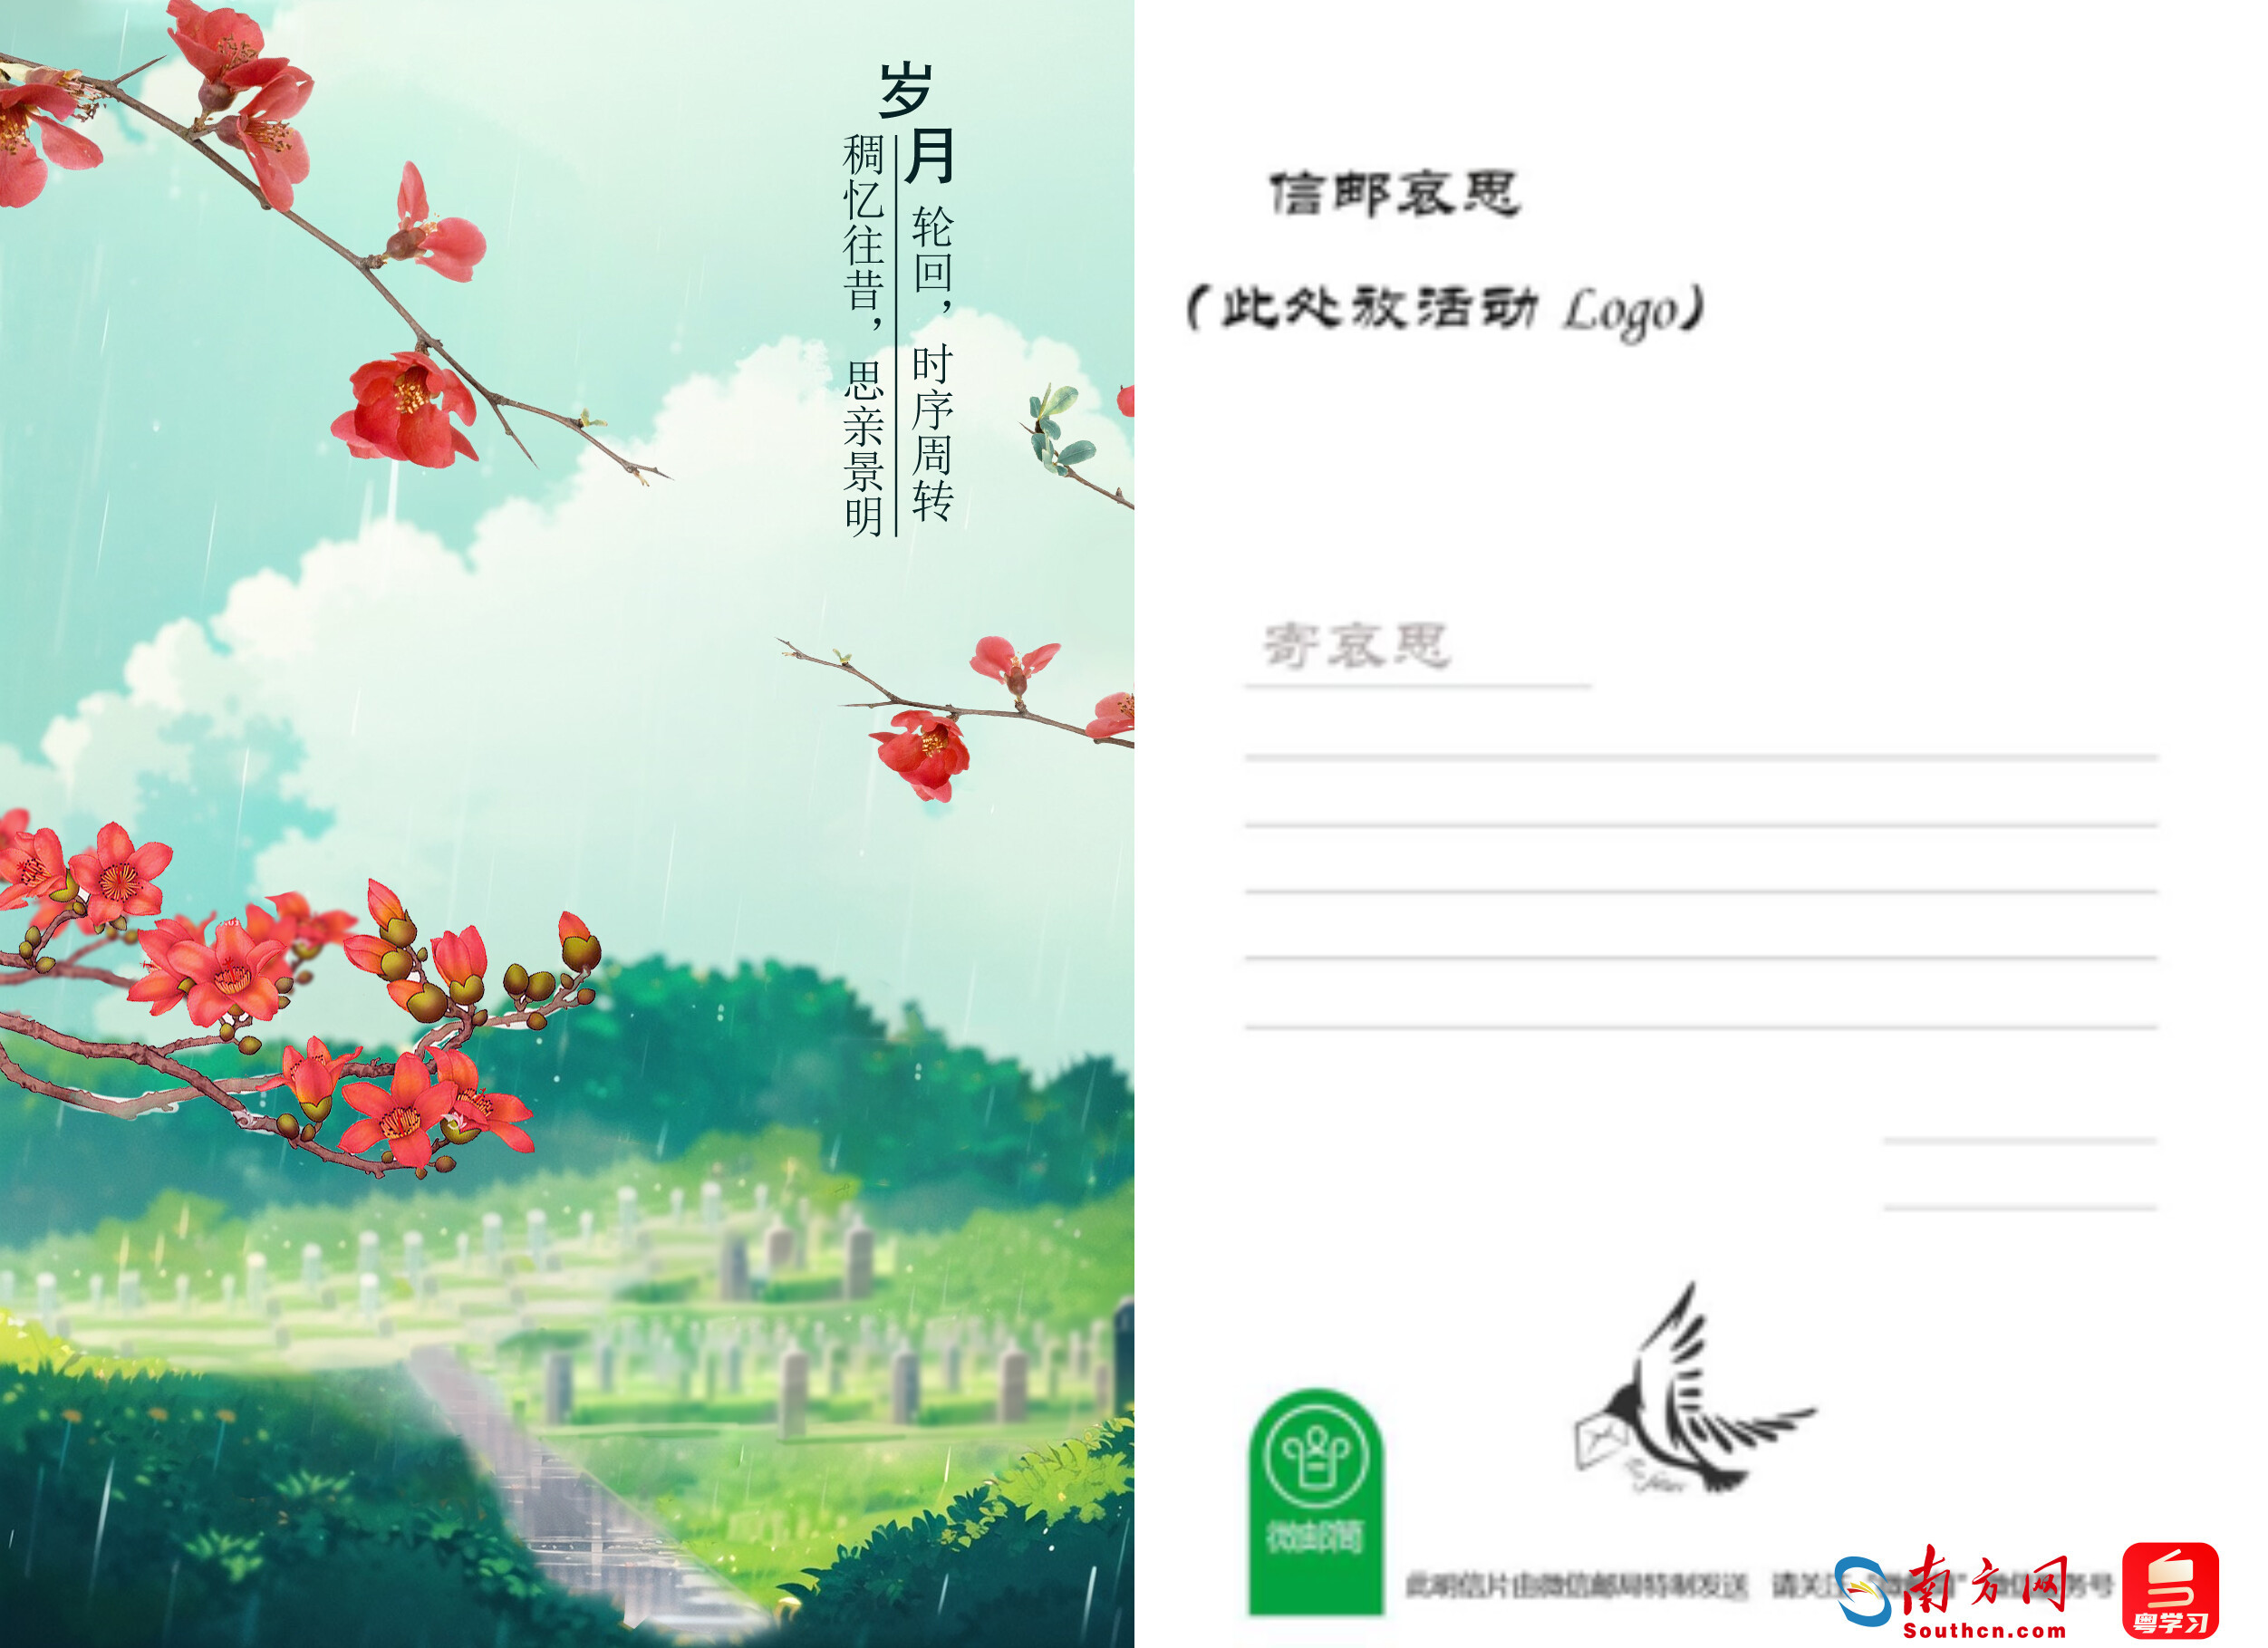 明信片正面,背面参考三,线上具体操作及支付方式如下(一)广州市民登录